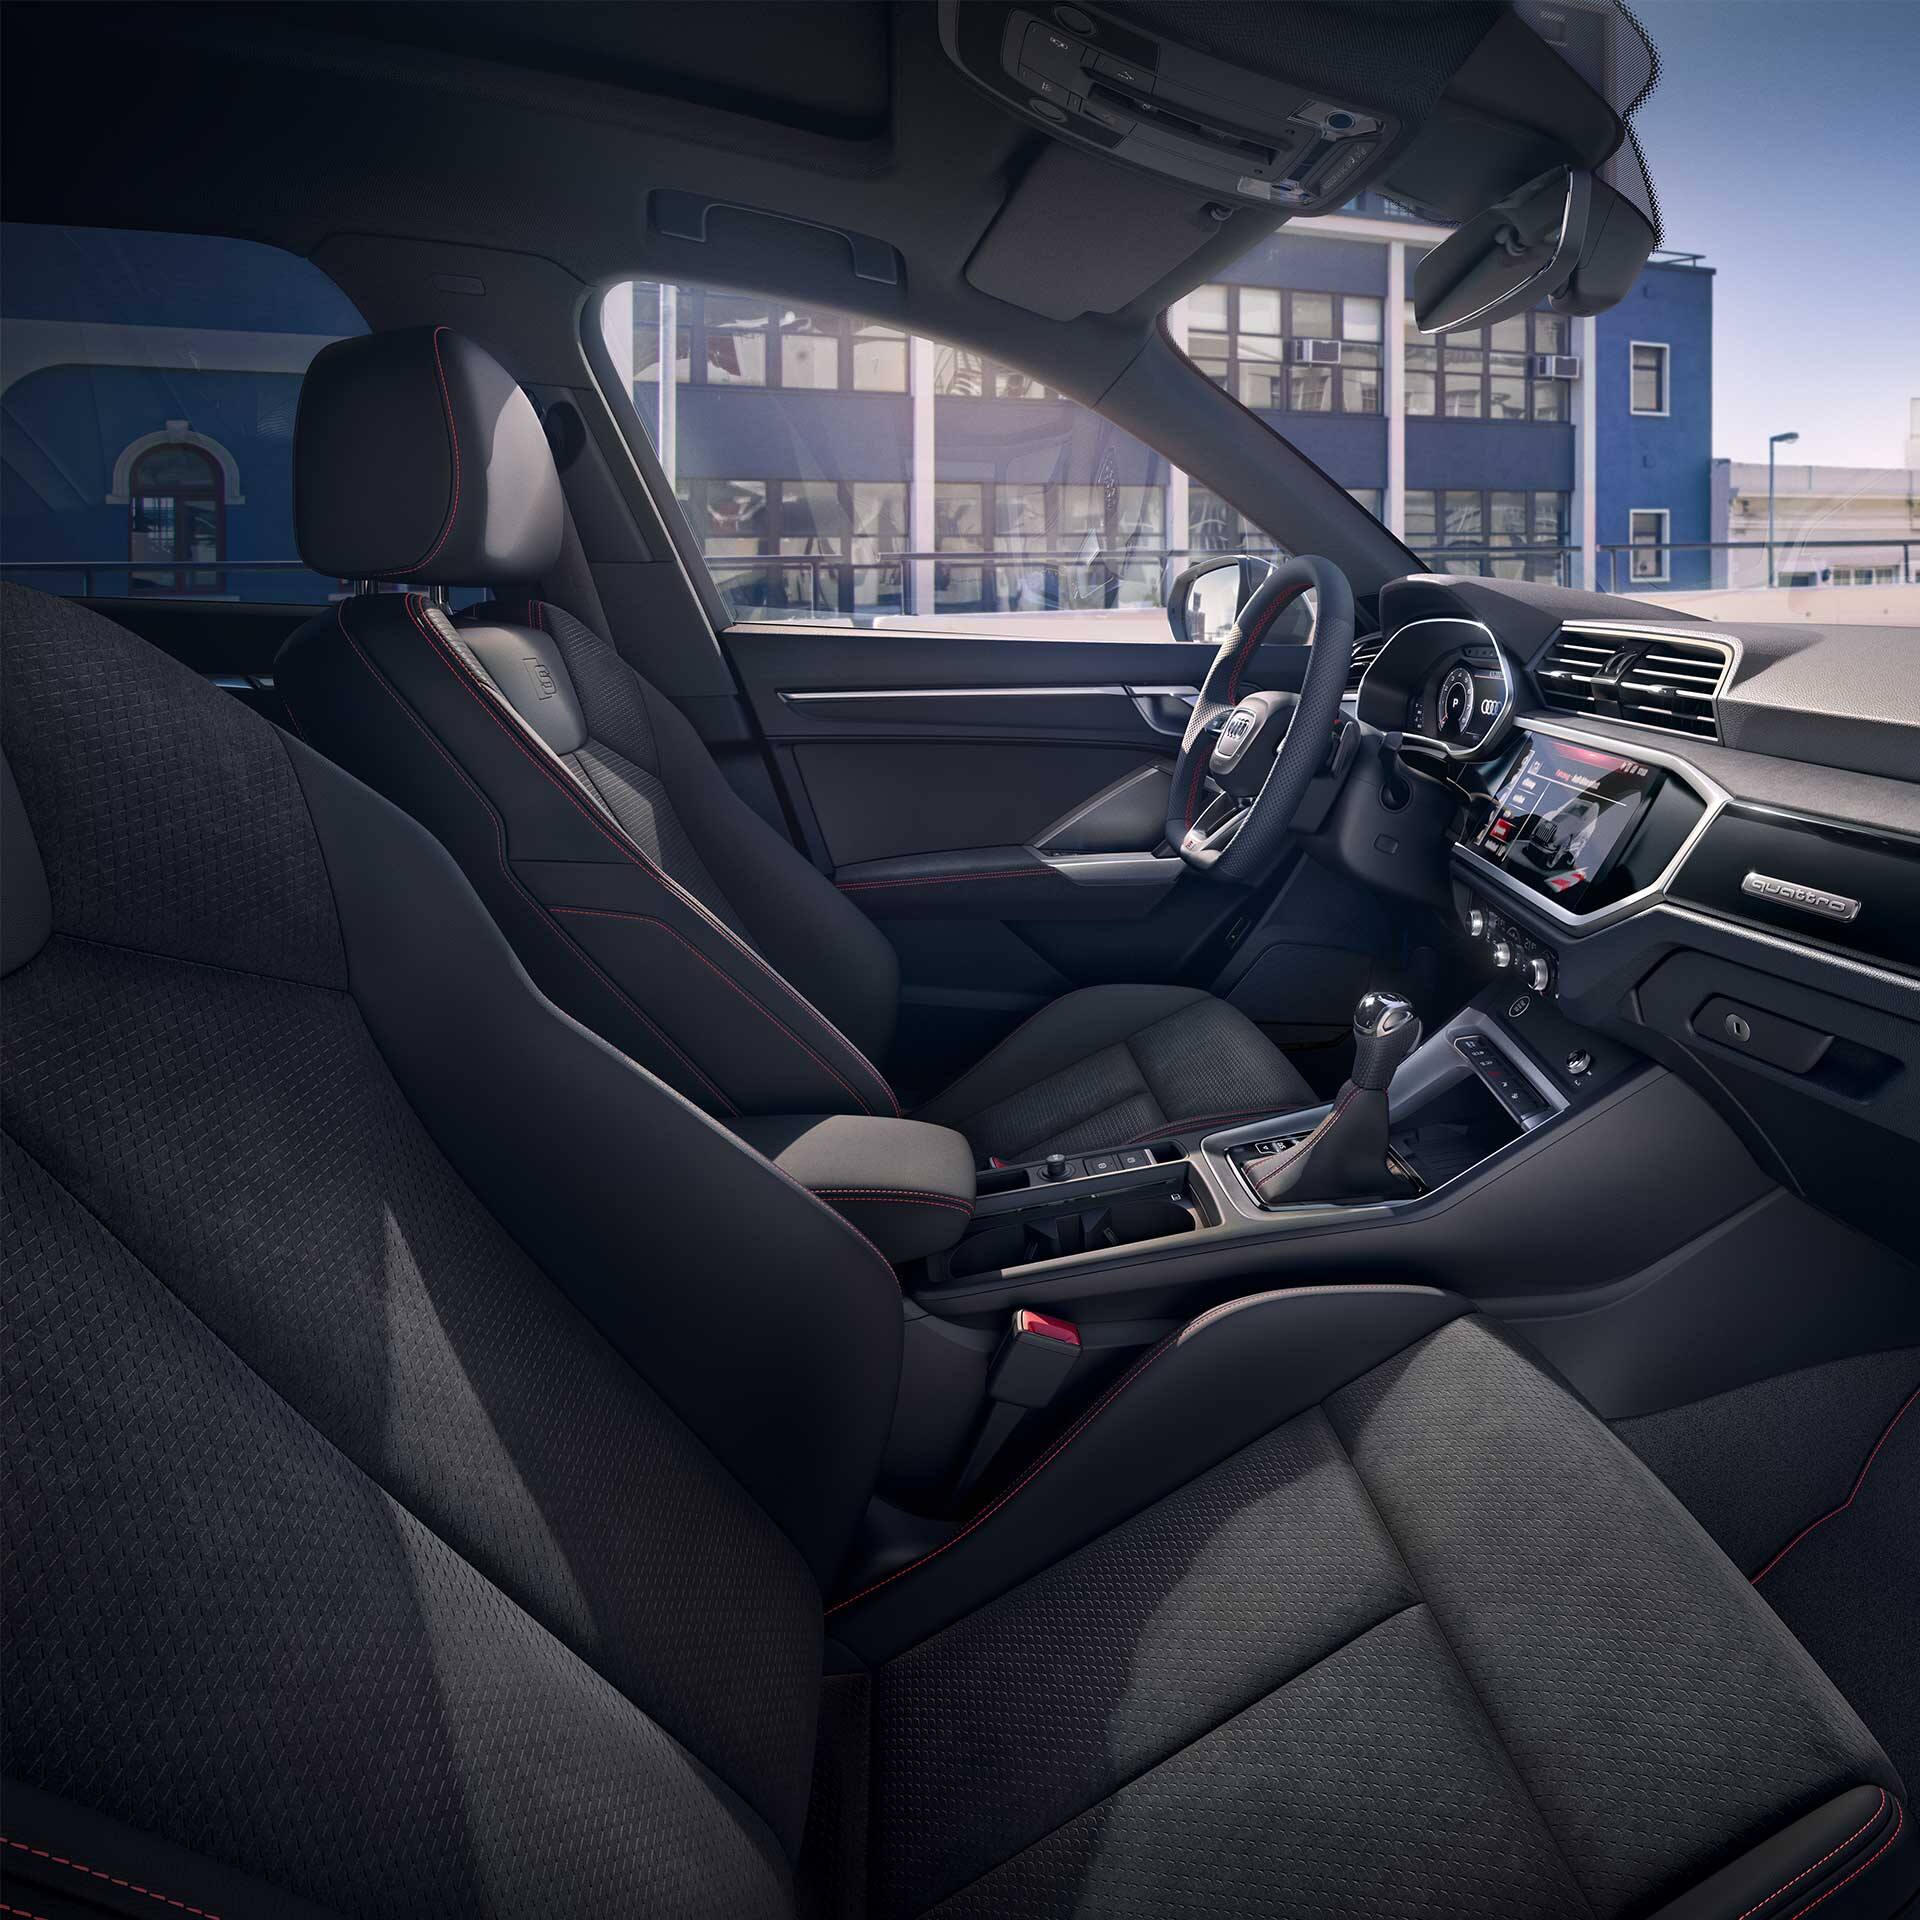 Audi Q3 interiér